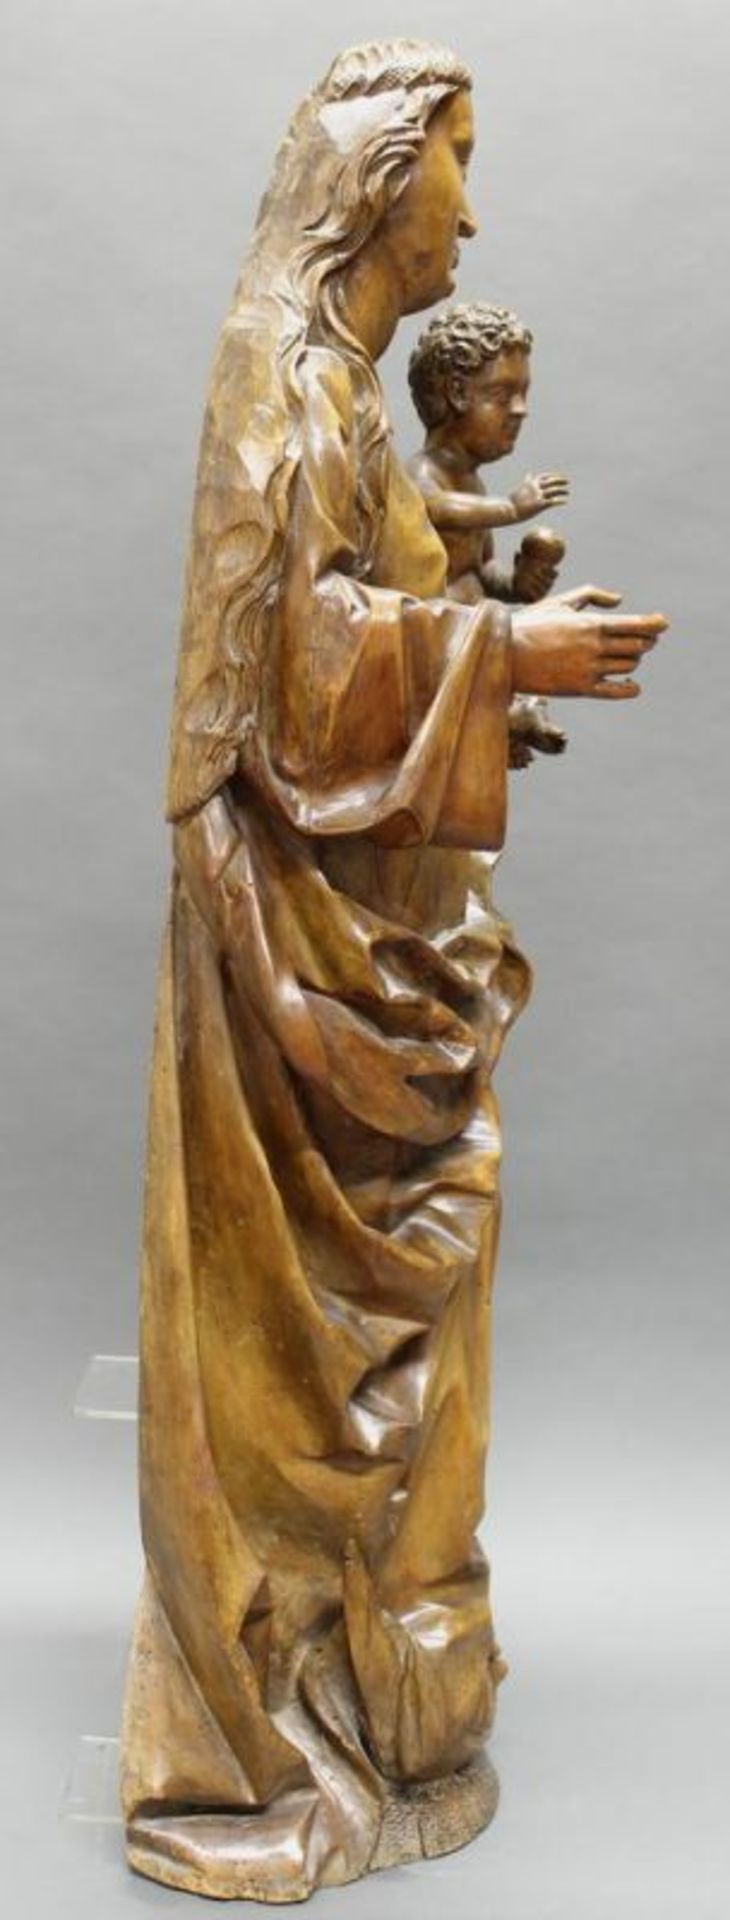 Skulptur, Holz geschnitzt, "Madonna mit Kind", wohl Lindenholz, Nürnberg um 1520/1525, - Image 4 of 6